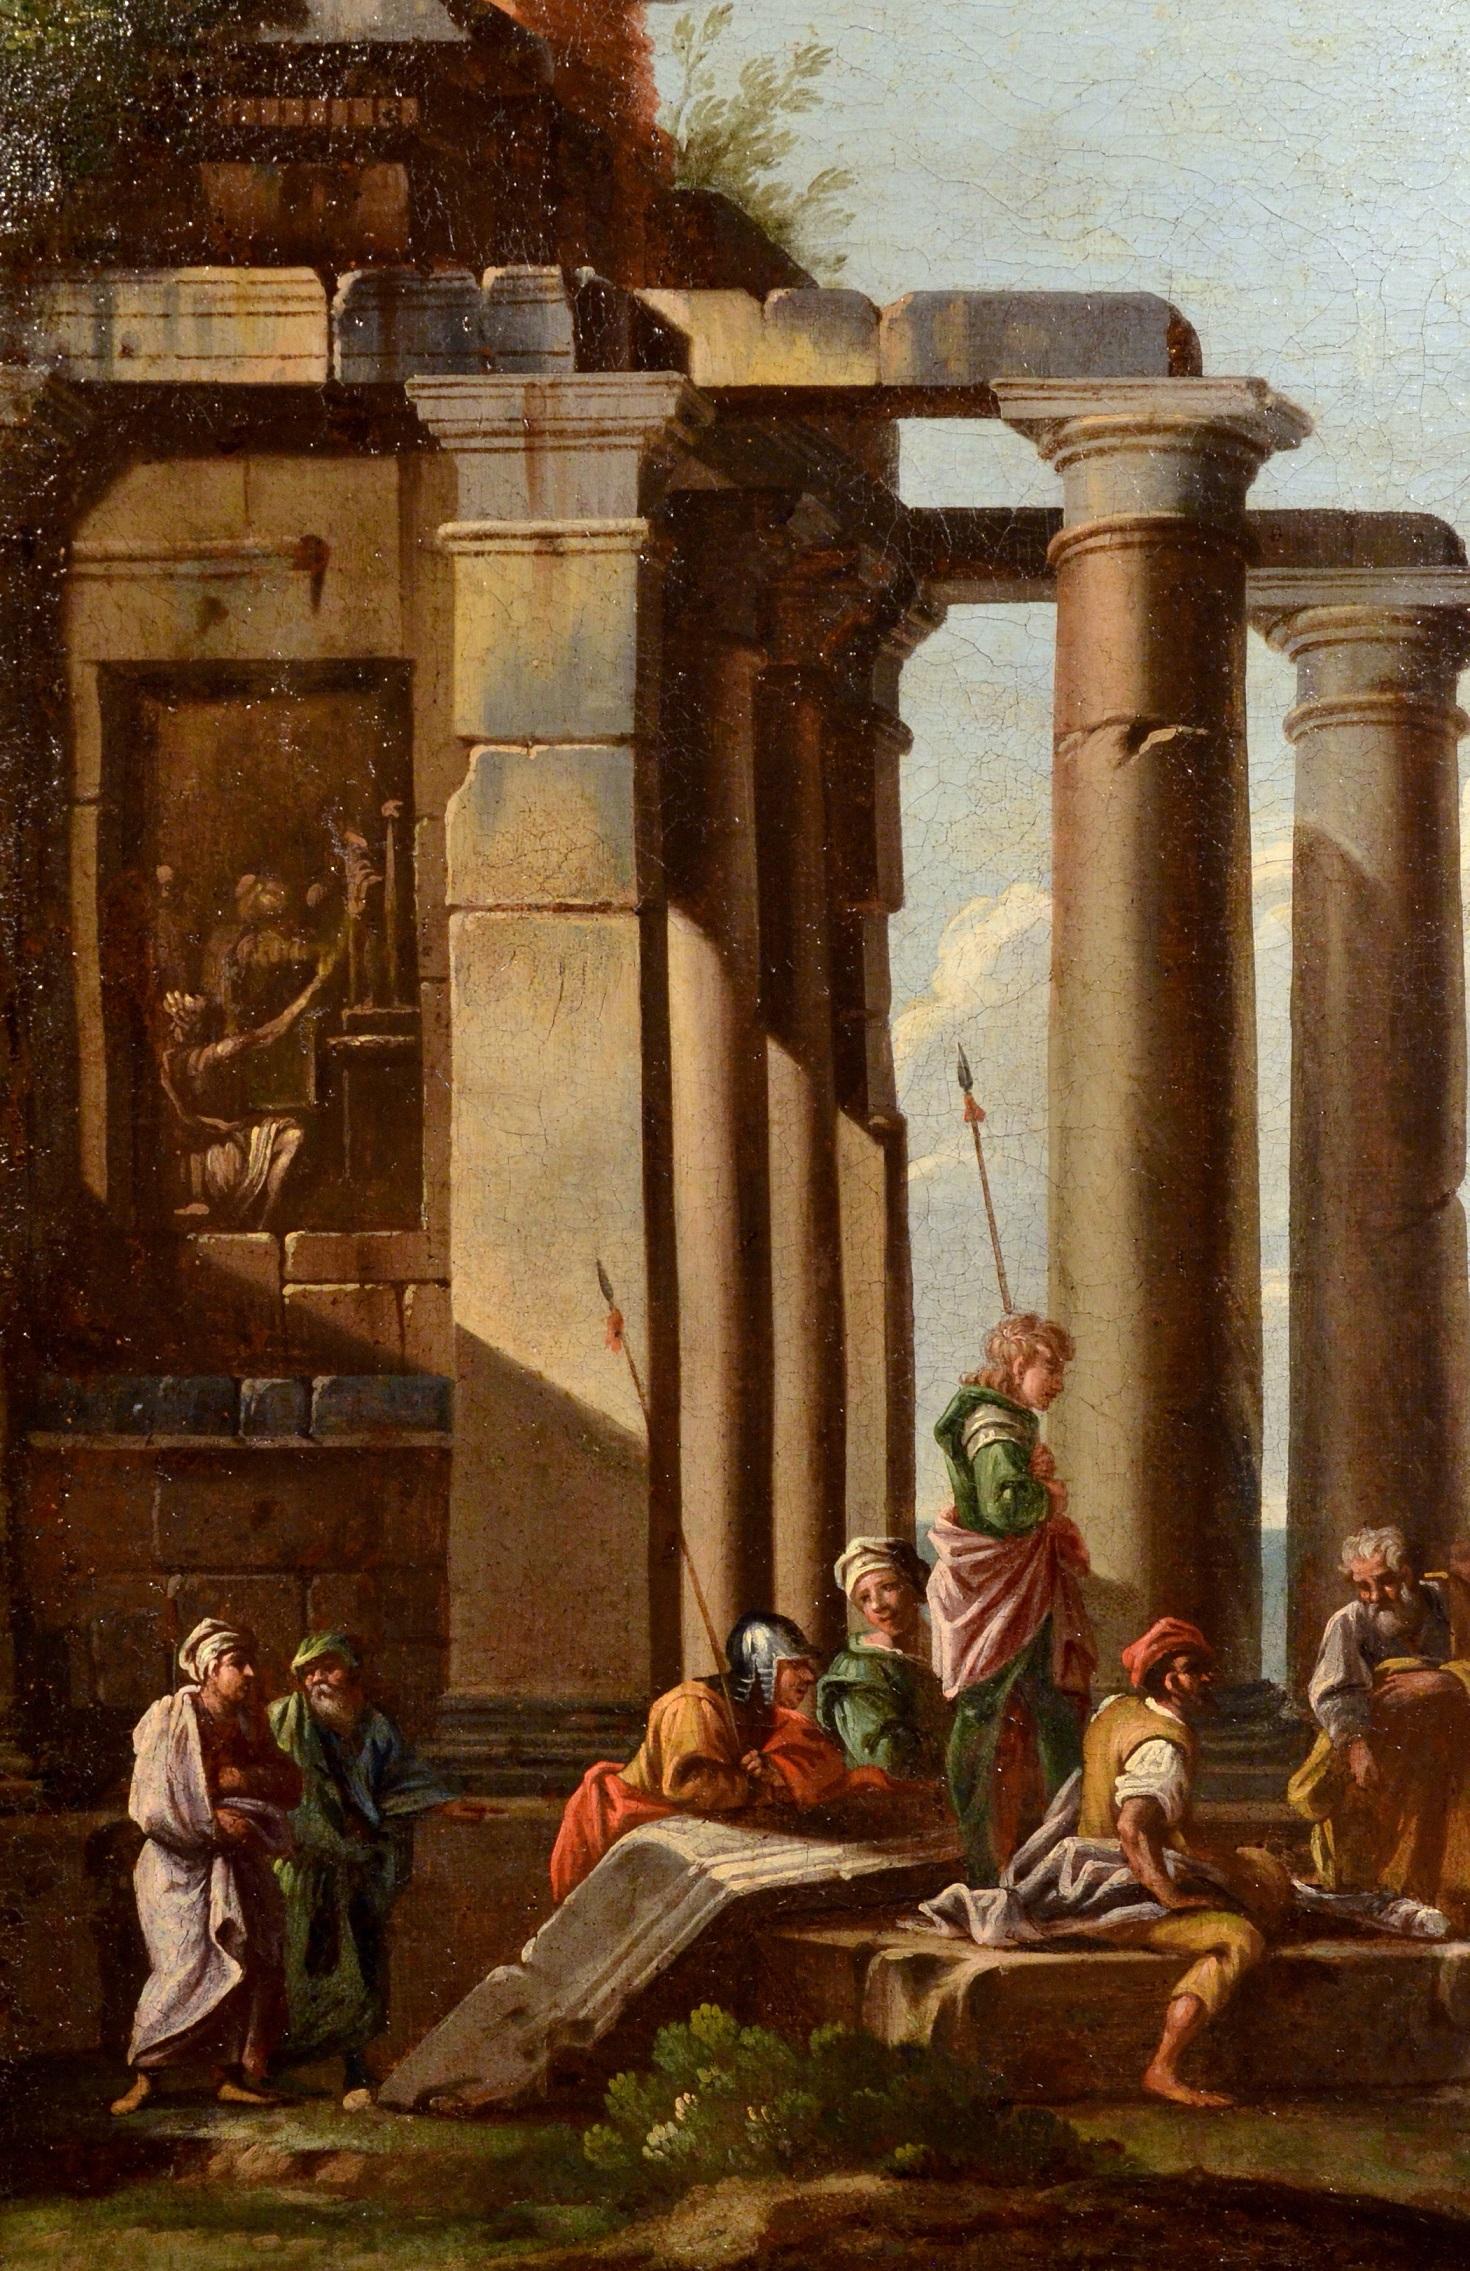 Giovanni Ghisolfi
(Milan 1623 - 1683)
Capriccio architectural avec les ruines d'un temple ionique

Peinture à l'huile sur toile
73 x 87 cm,
dans un cadre en bois doré 87 x 100 cm.

Cette vue qualitative avec caprice sur fond de marina (huile sur